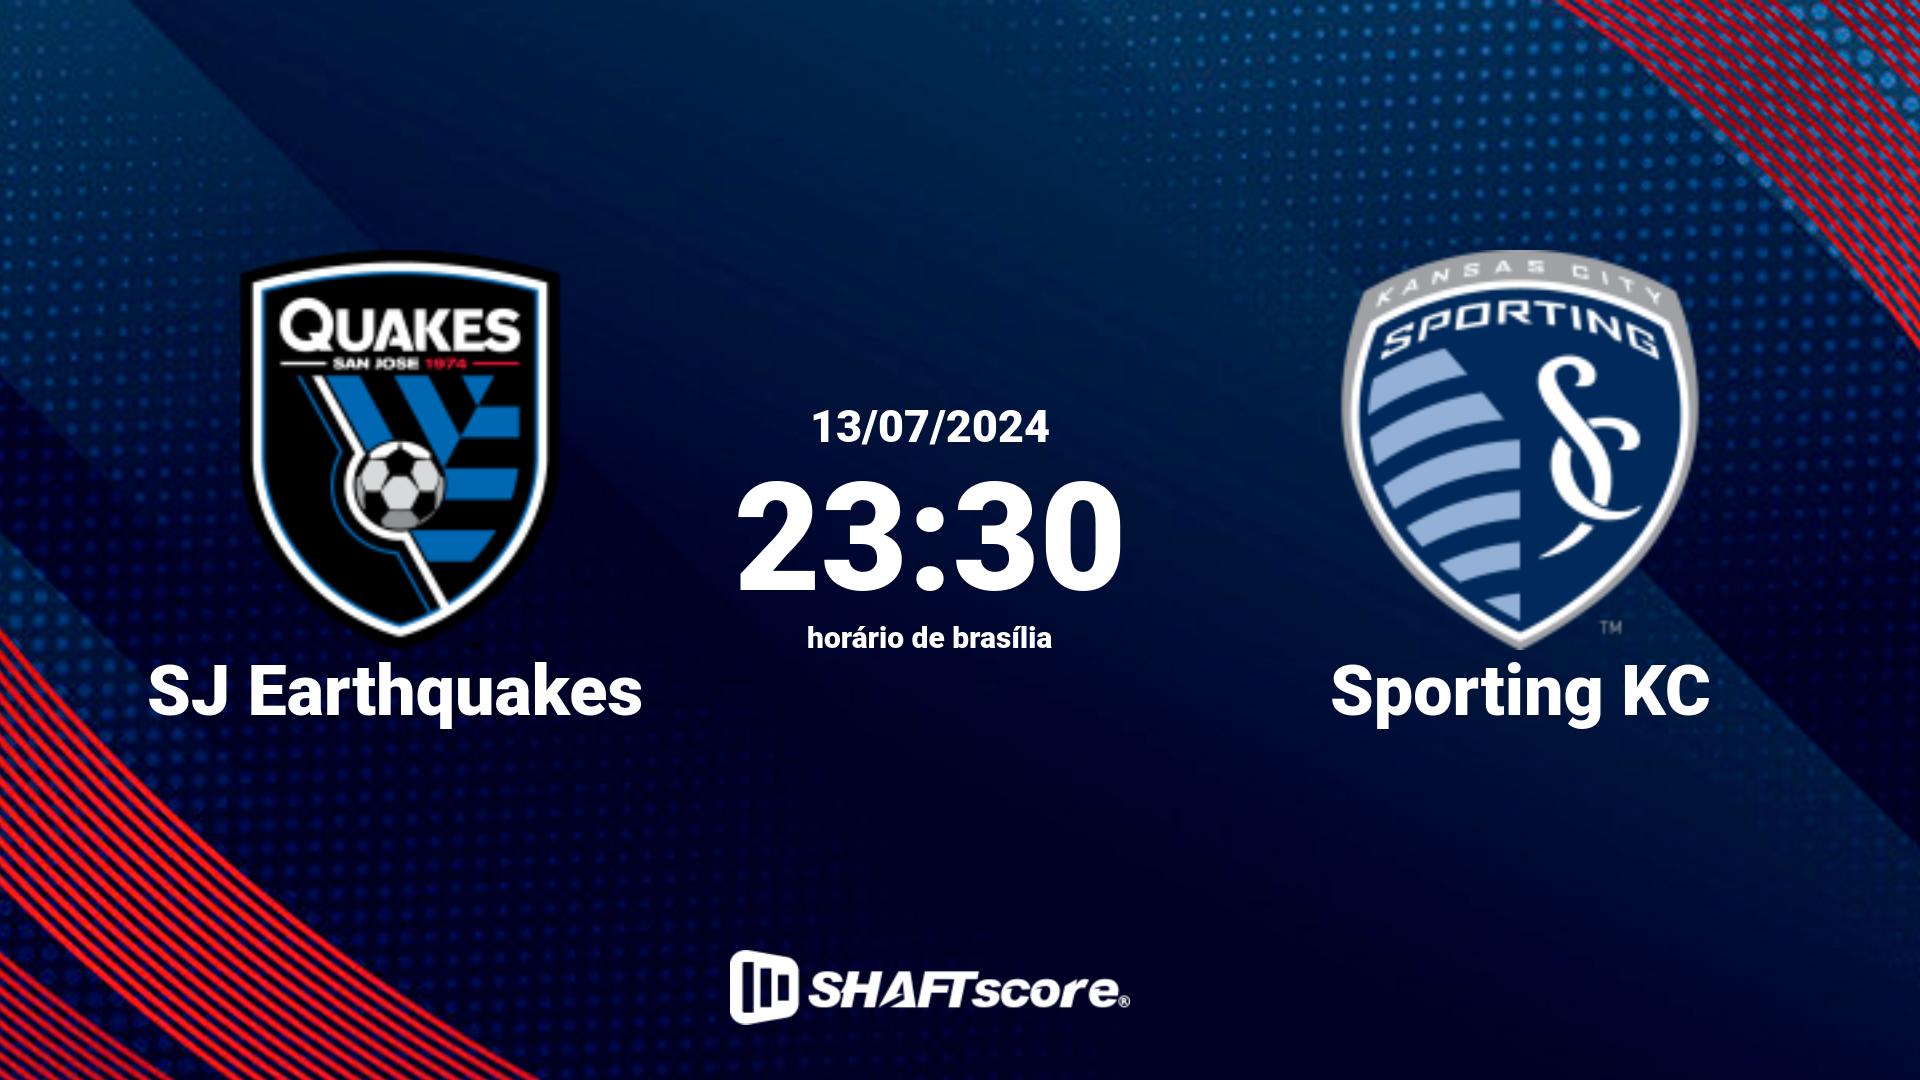 Estatísticas do jogo SJ Earthquakes vs Sporting KC 13.07 23:30